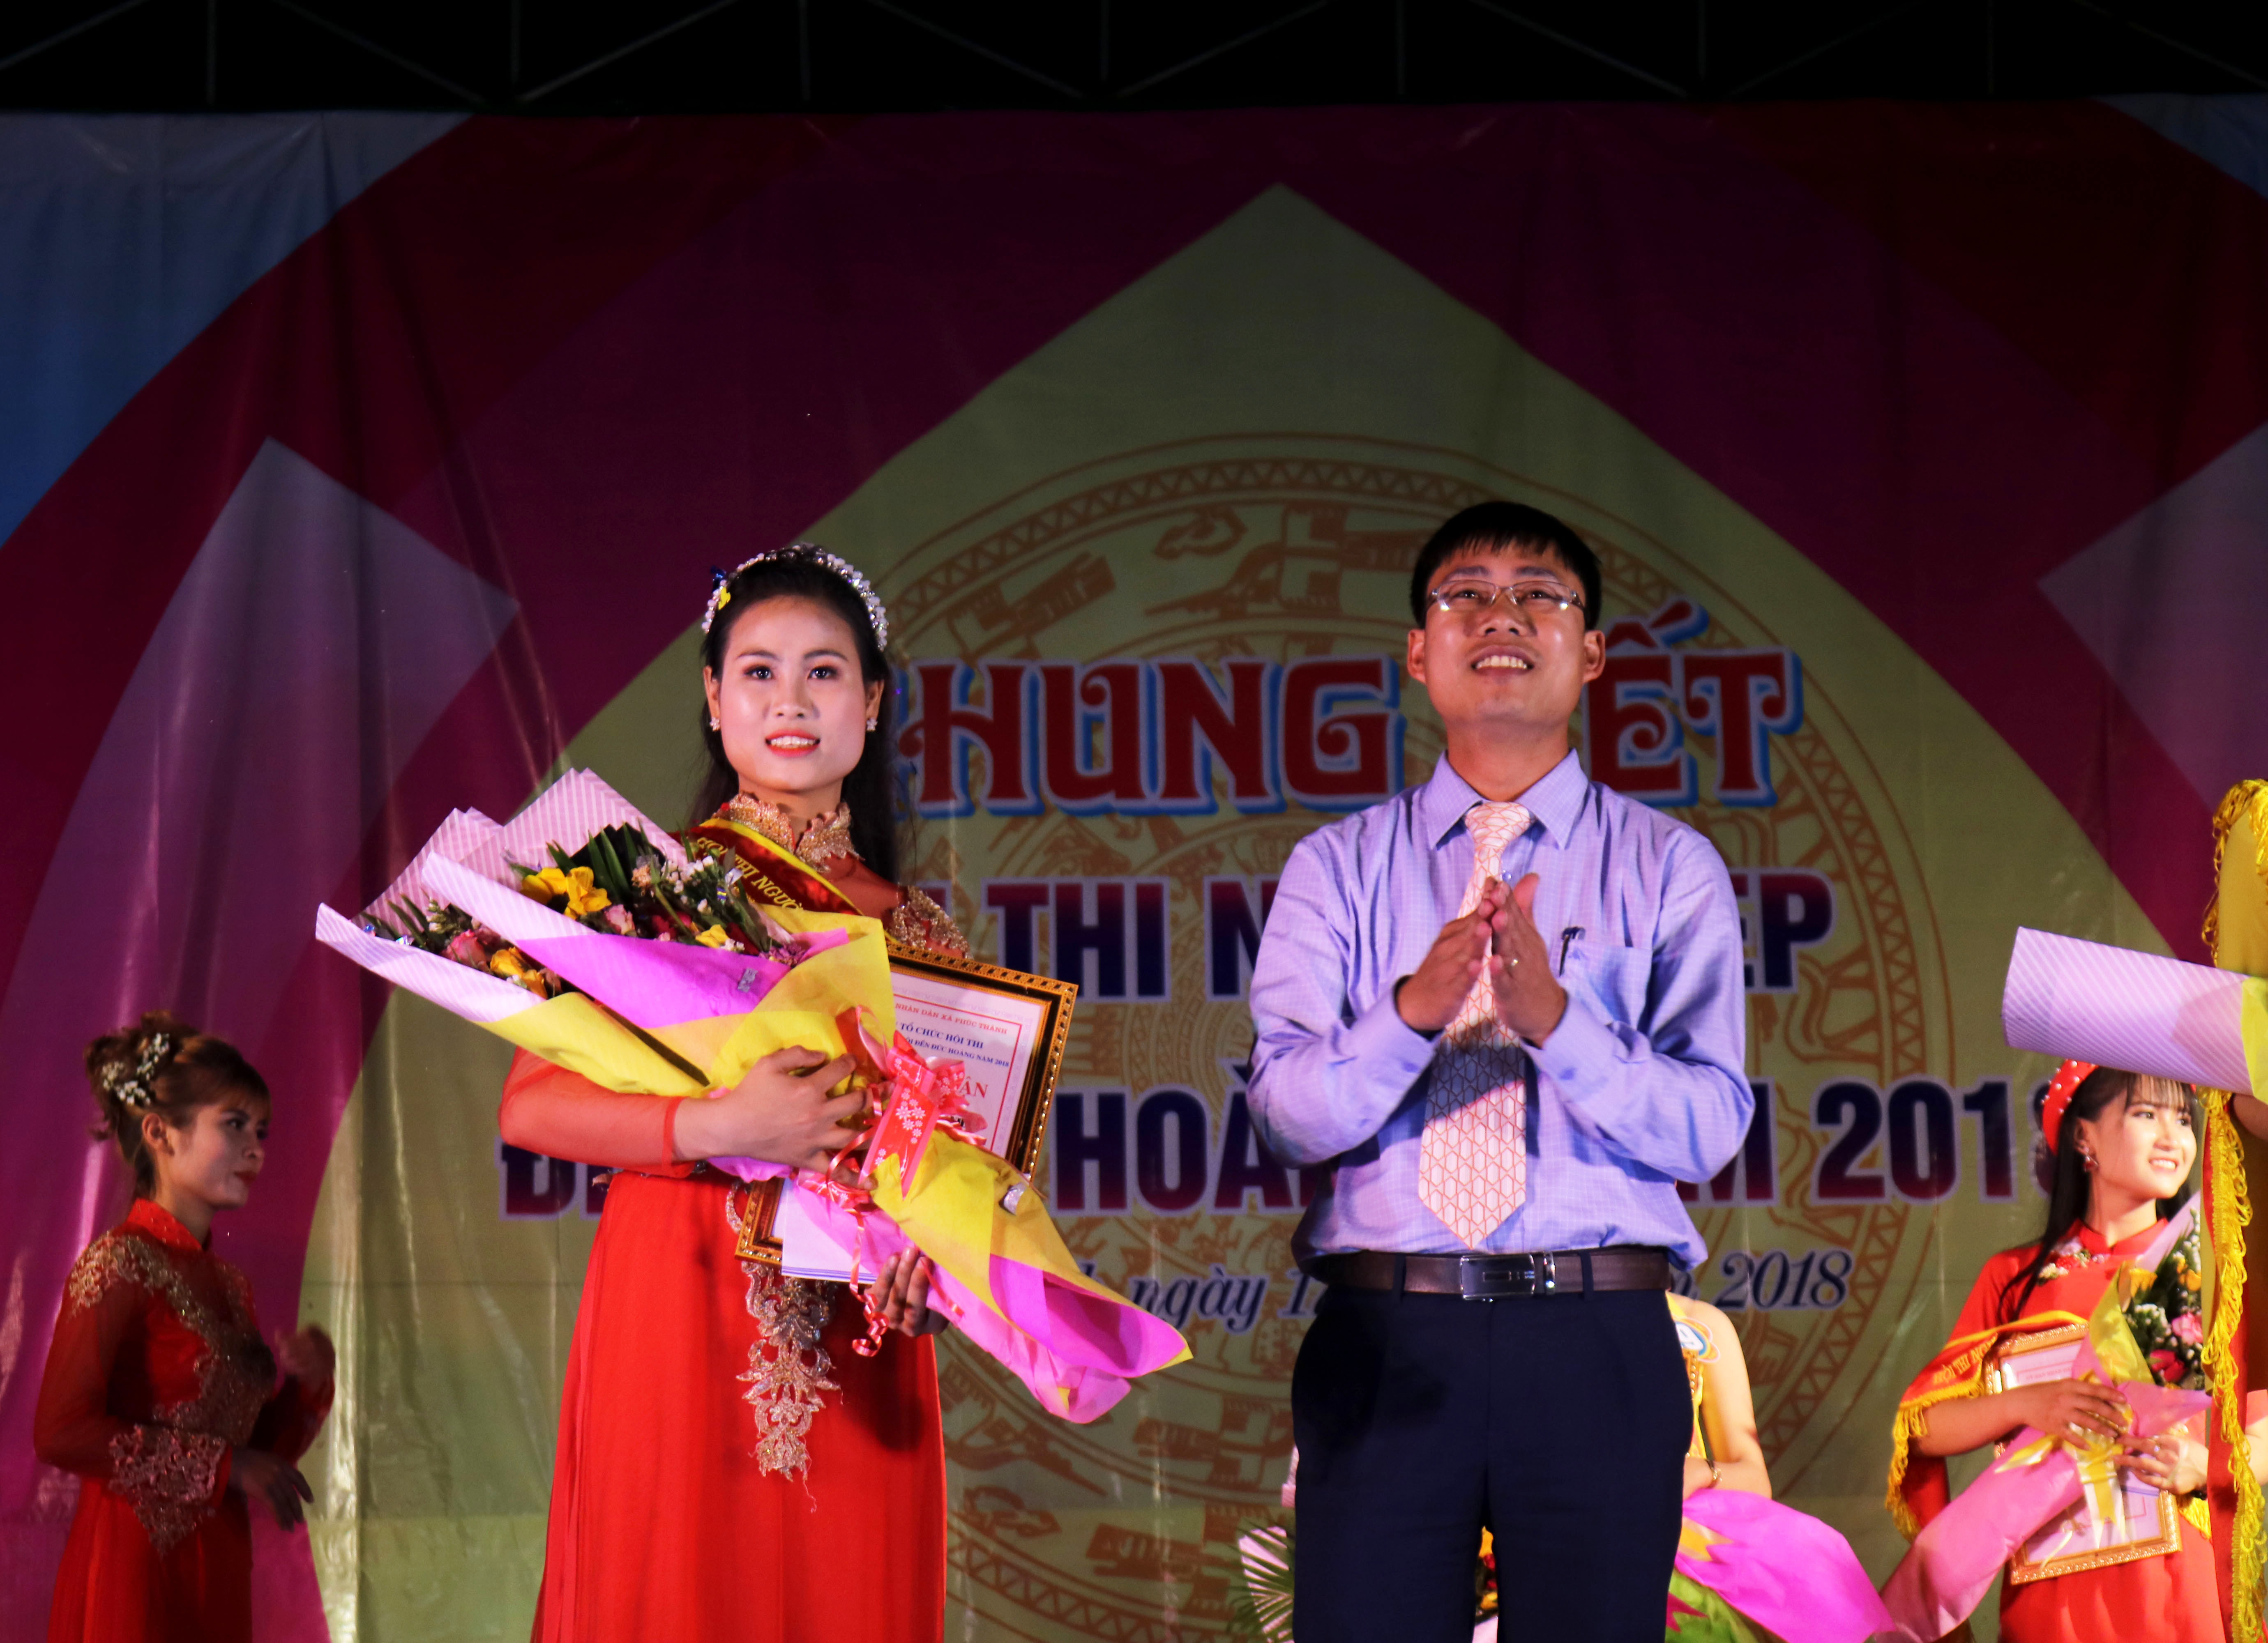 Giải Nhất đã thuộc về thí sinh Nguyễn Thị Minh (17 tuổi) học sinh lớp 11 C2, trường THPT Bắc Yên Thành với phần thưởng 2 triệu đồng và nhiều ưu đãi khác từ nhà tài trợ.